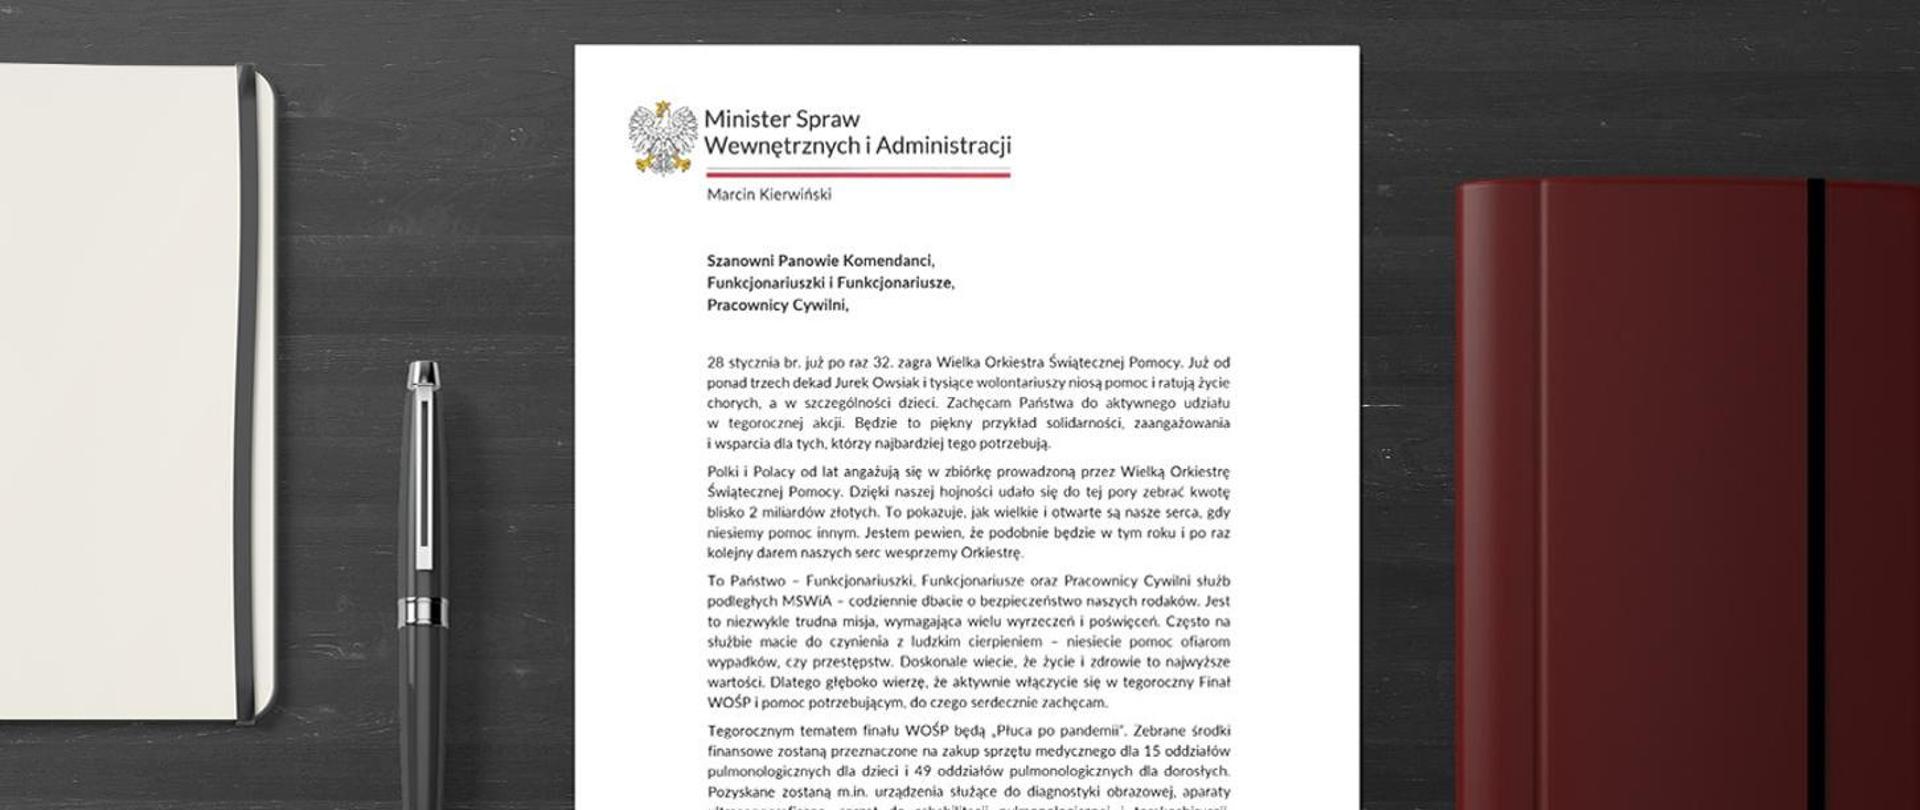 Zdjęcie przedstawia list Pana Ministra Marcina Kierwińskiego.